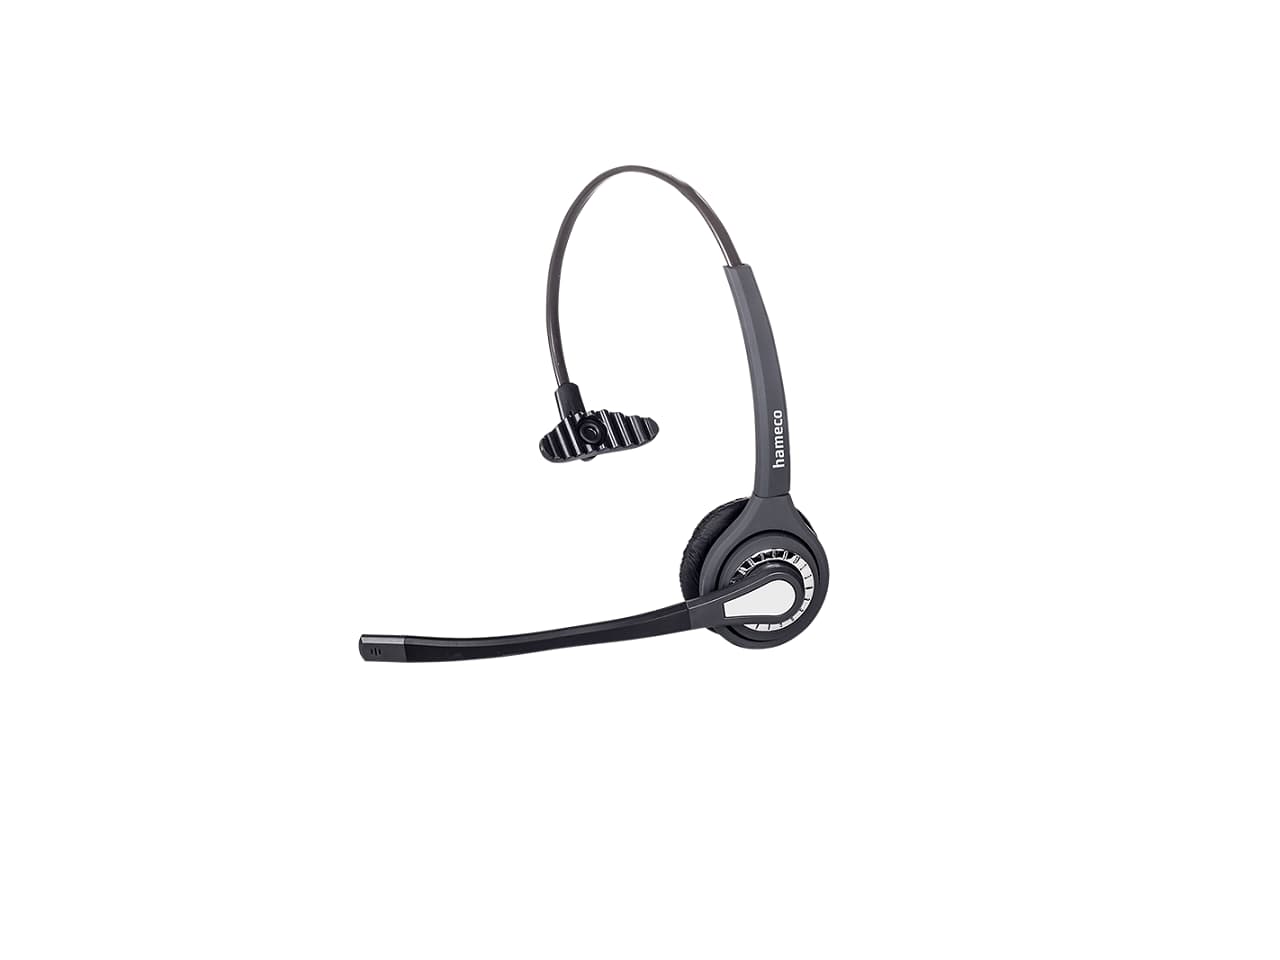 Hameco call center headset, fejhallgató, vezetékes fejhallgató mikrofonnal.